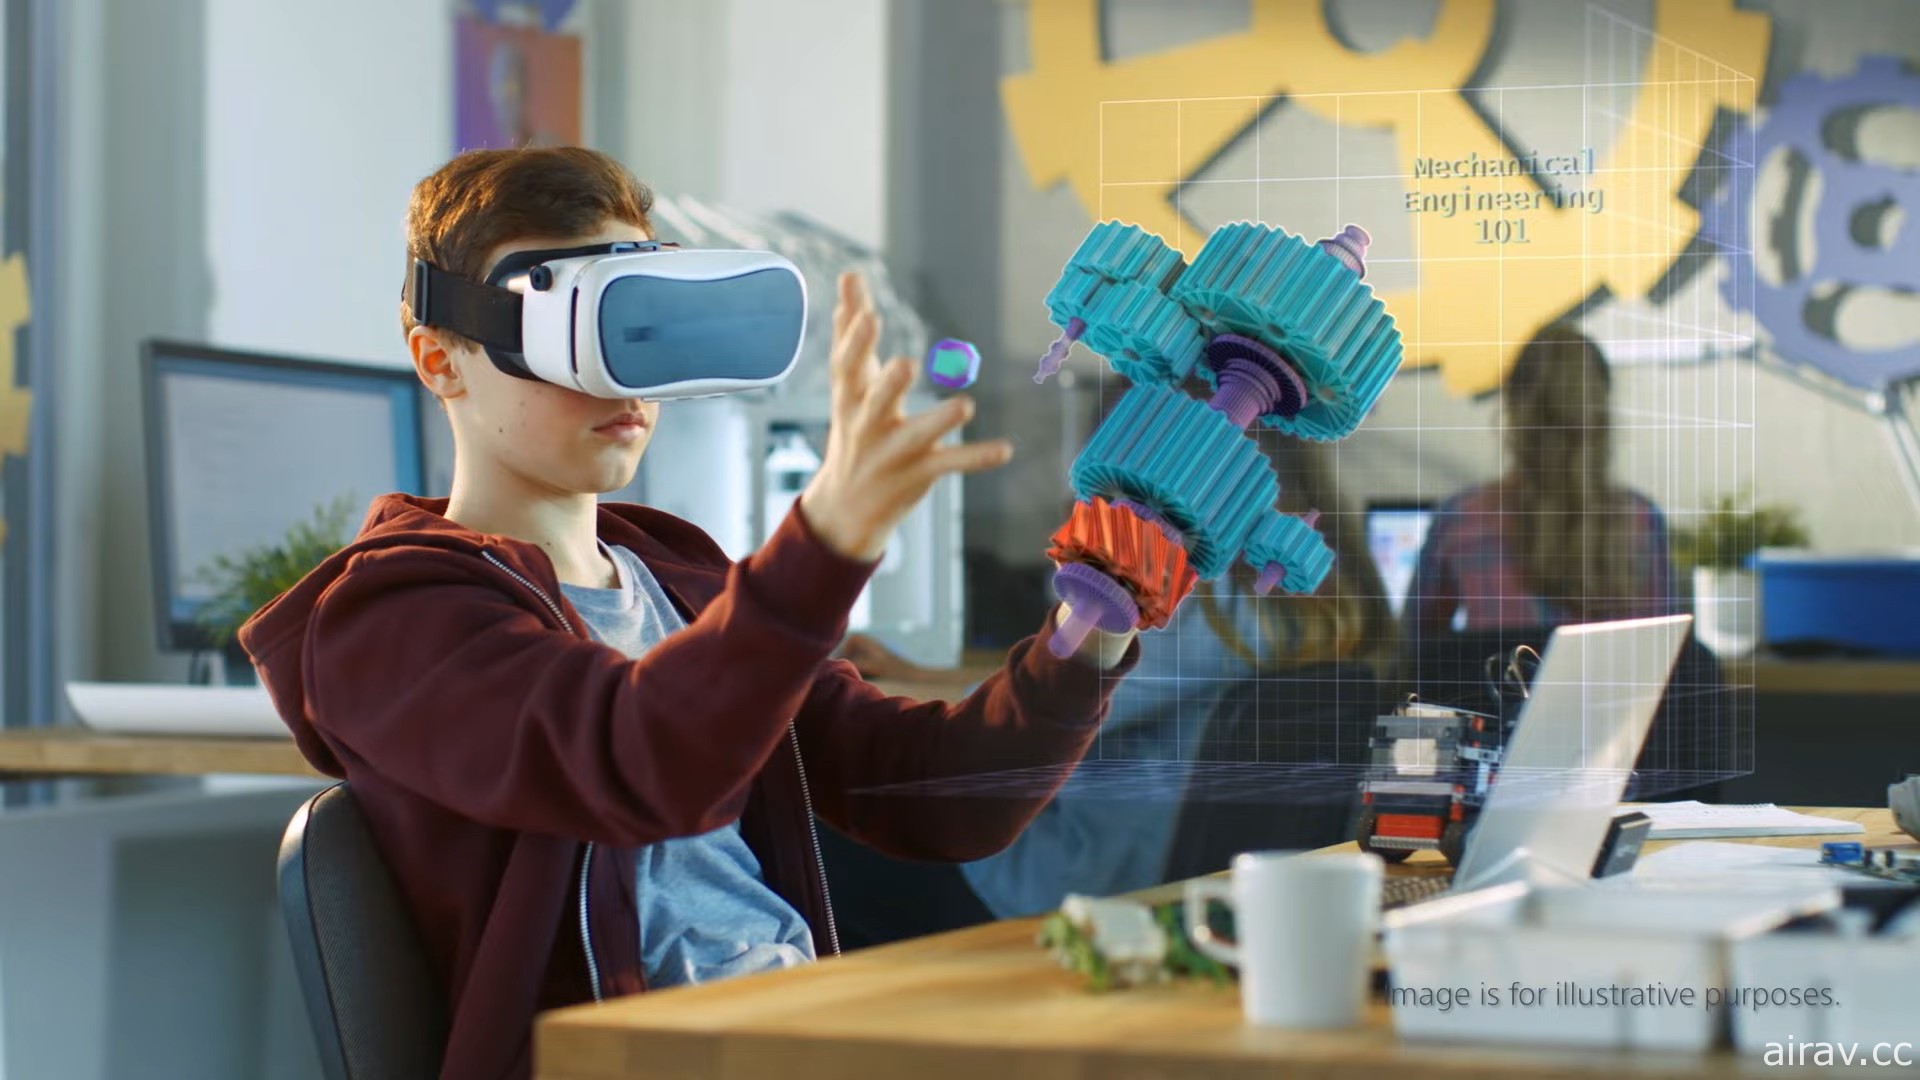 替下一代 PS VR 铺路？Sony 展示 8K 分辨率低延迟 VR 头戴装置研发成果